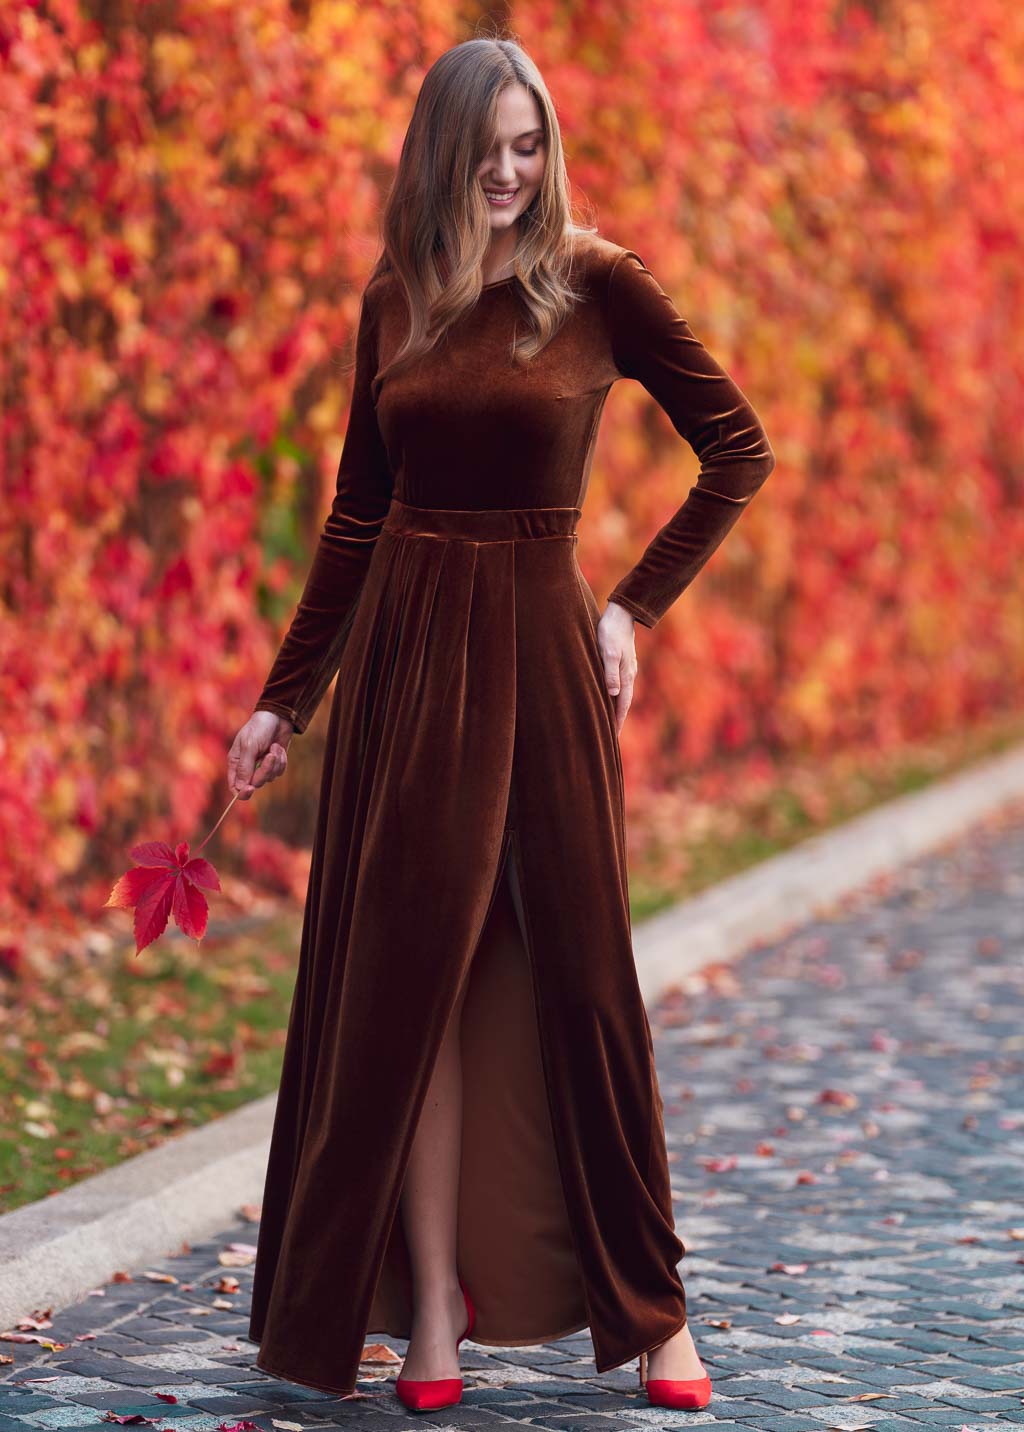 Rust gold velvet long dress